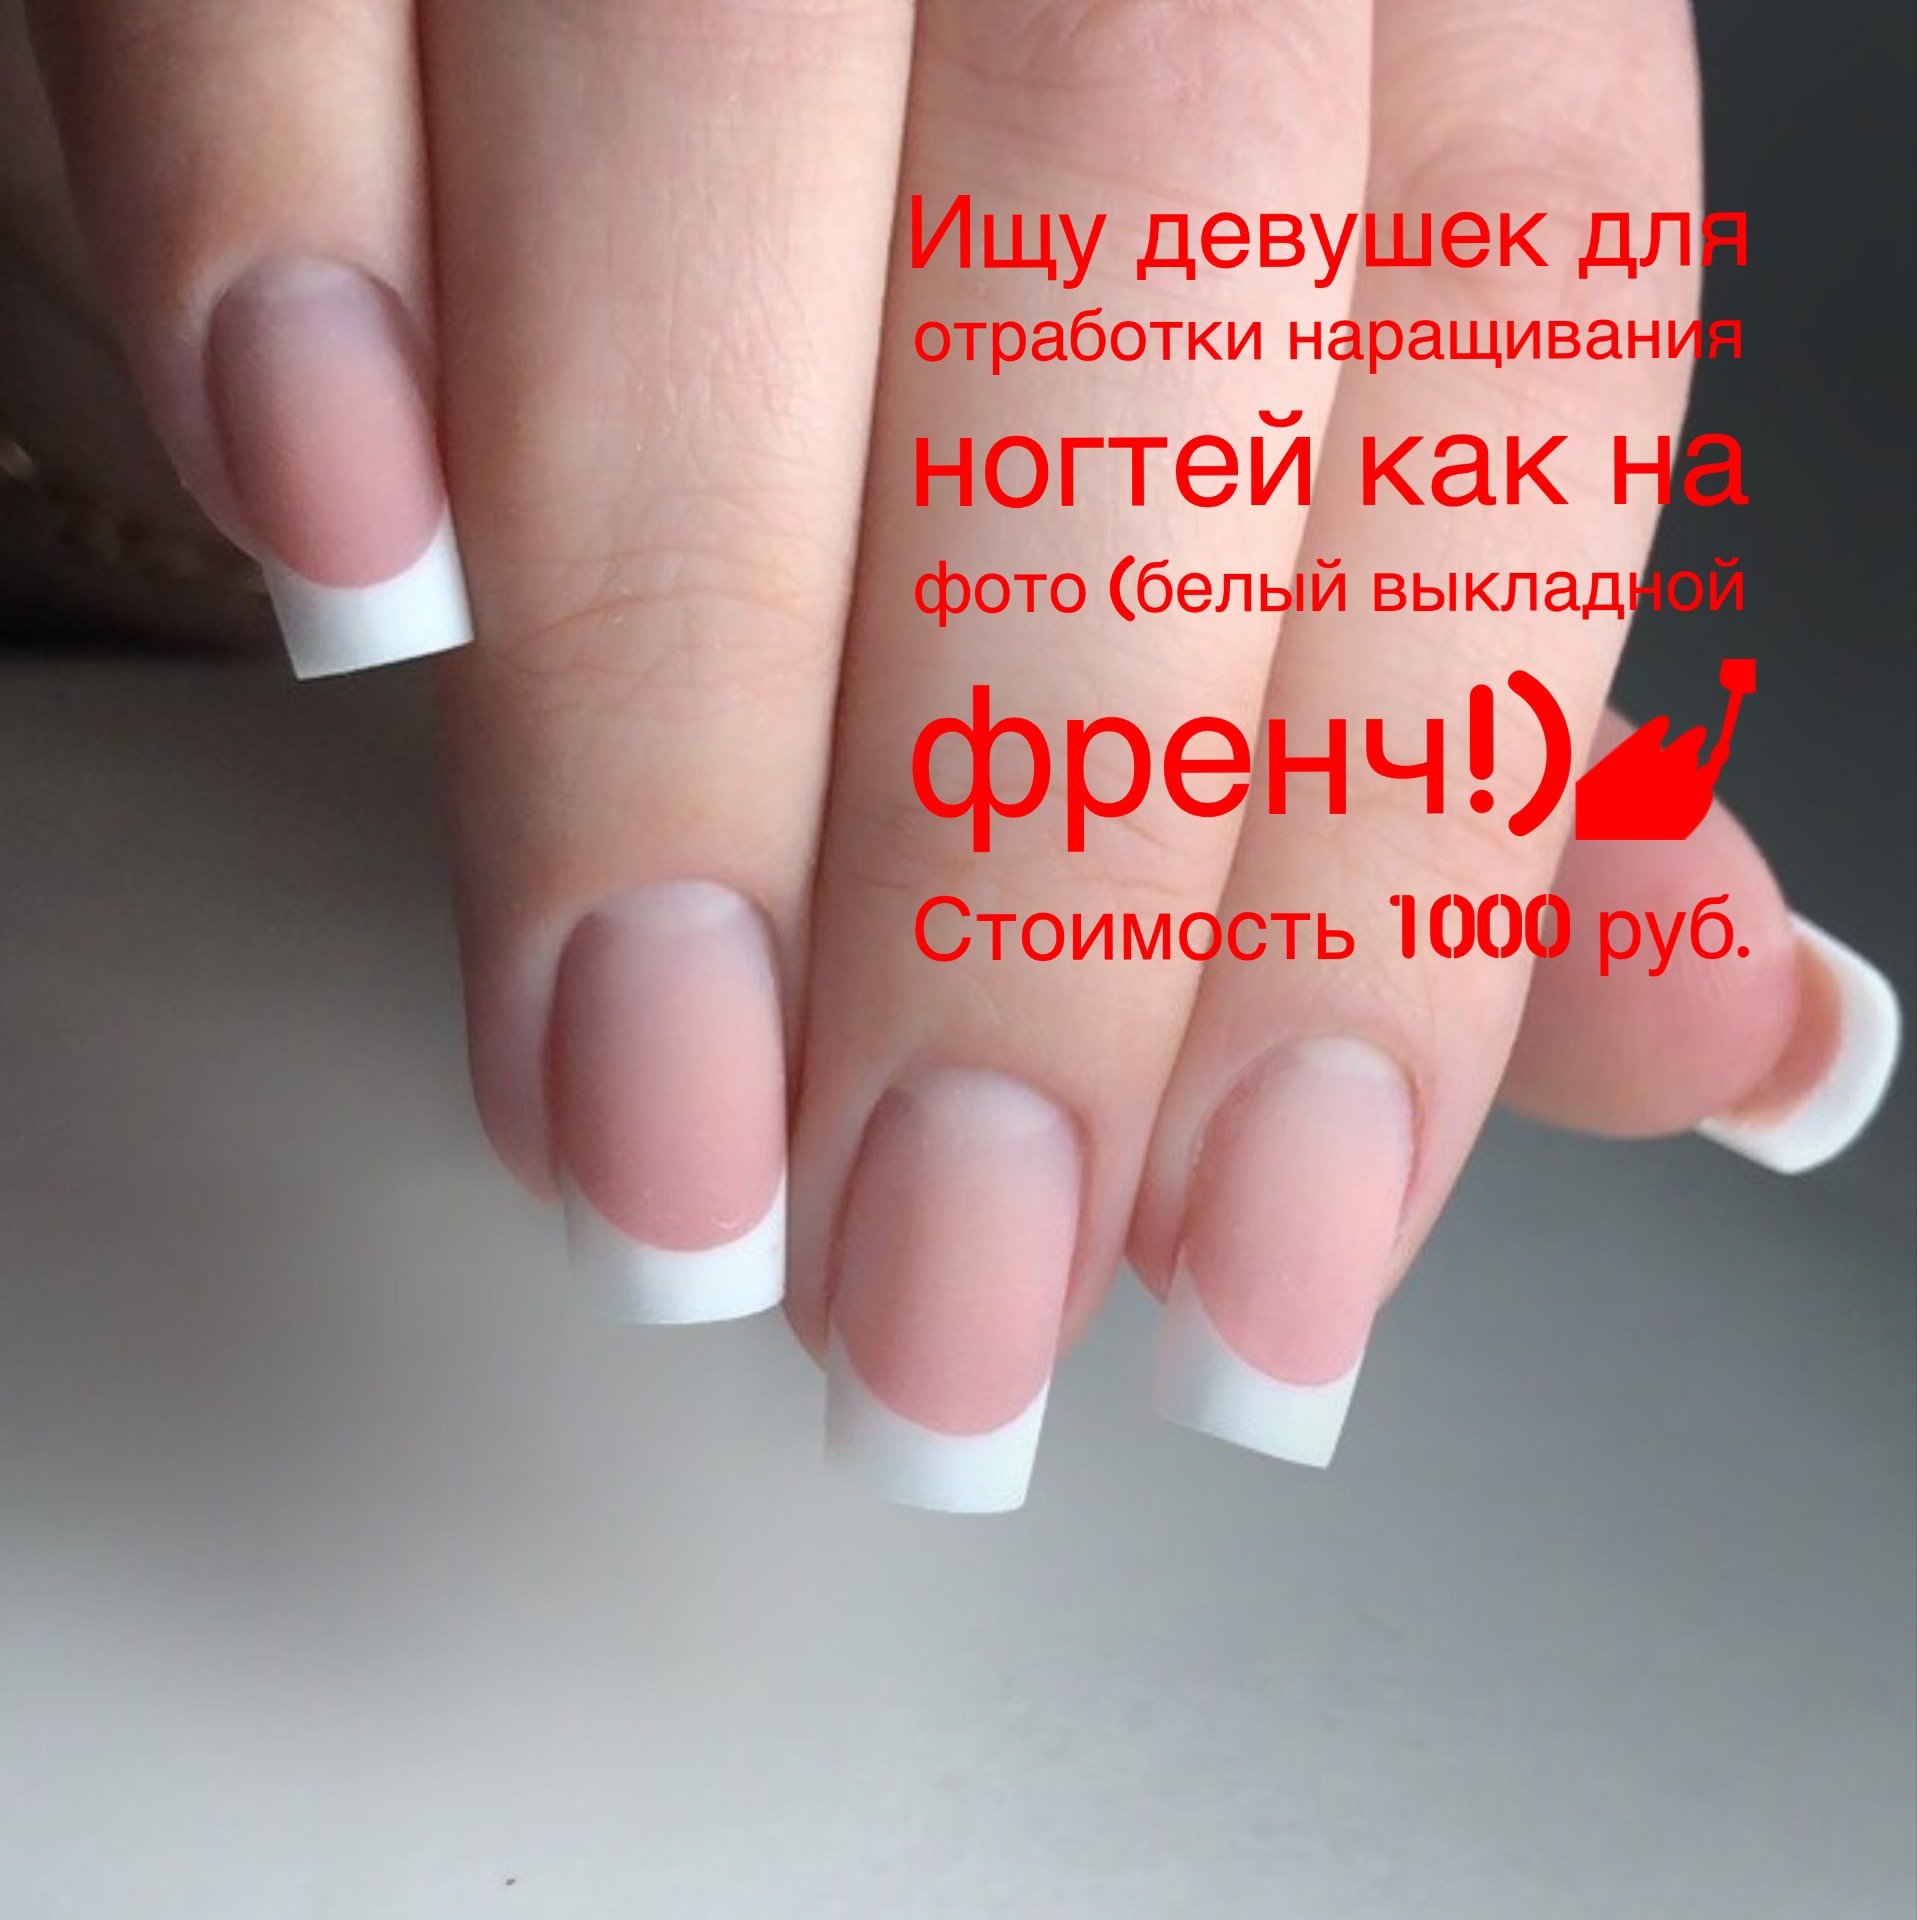 арочные натуральные ногти фото